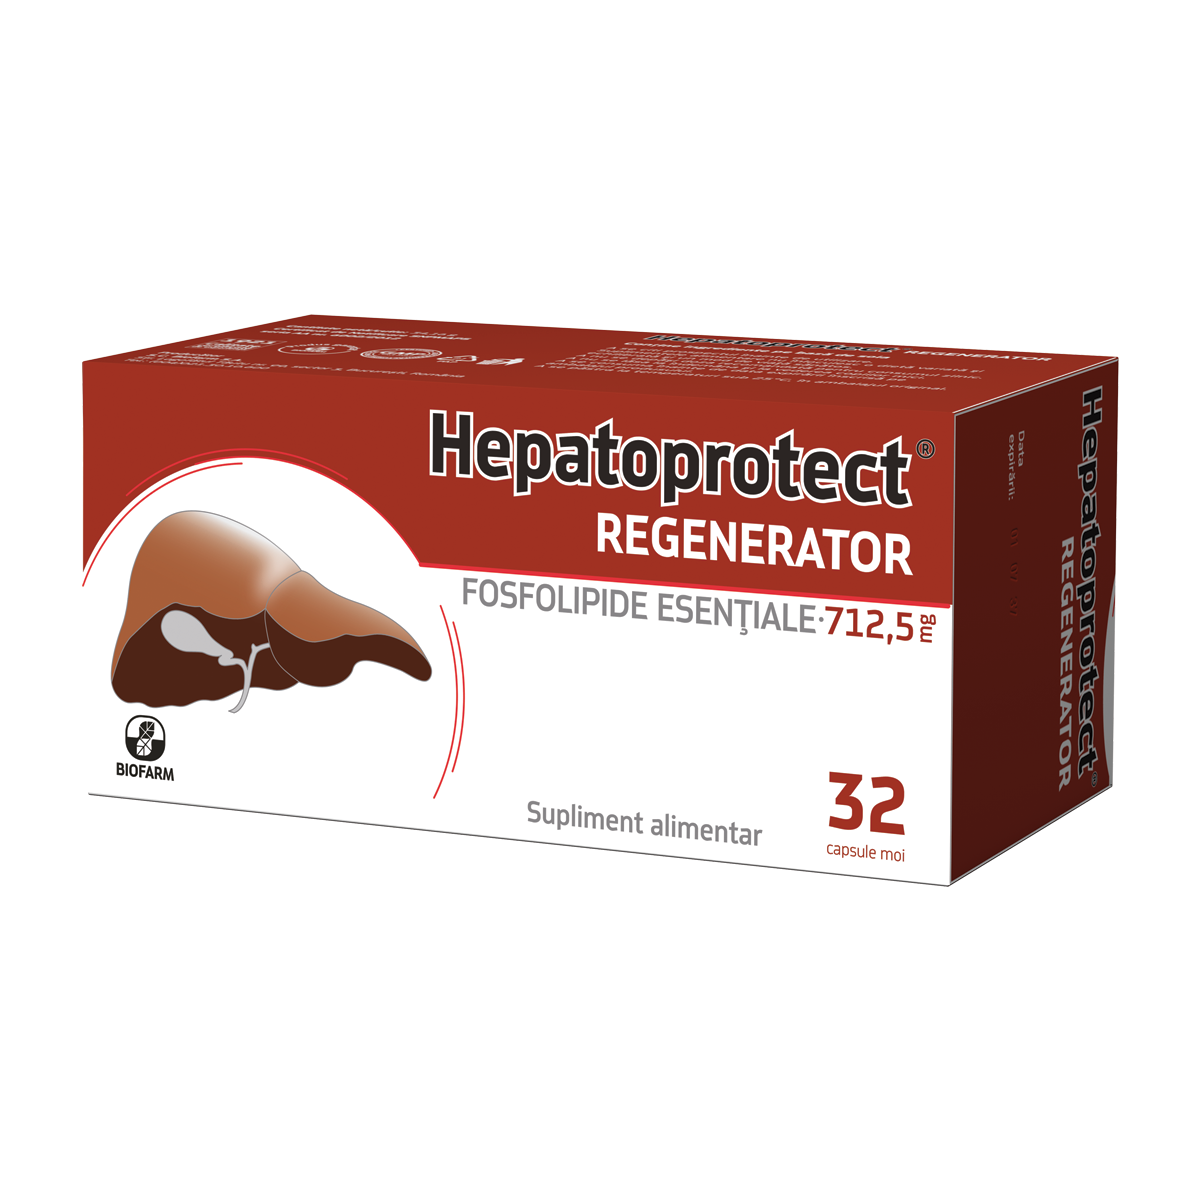 HEPATOPROTECT REGENERATOR 28 CAPSULE BIOFARM